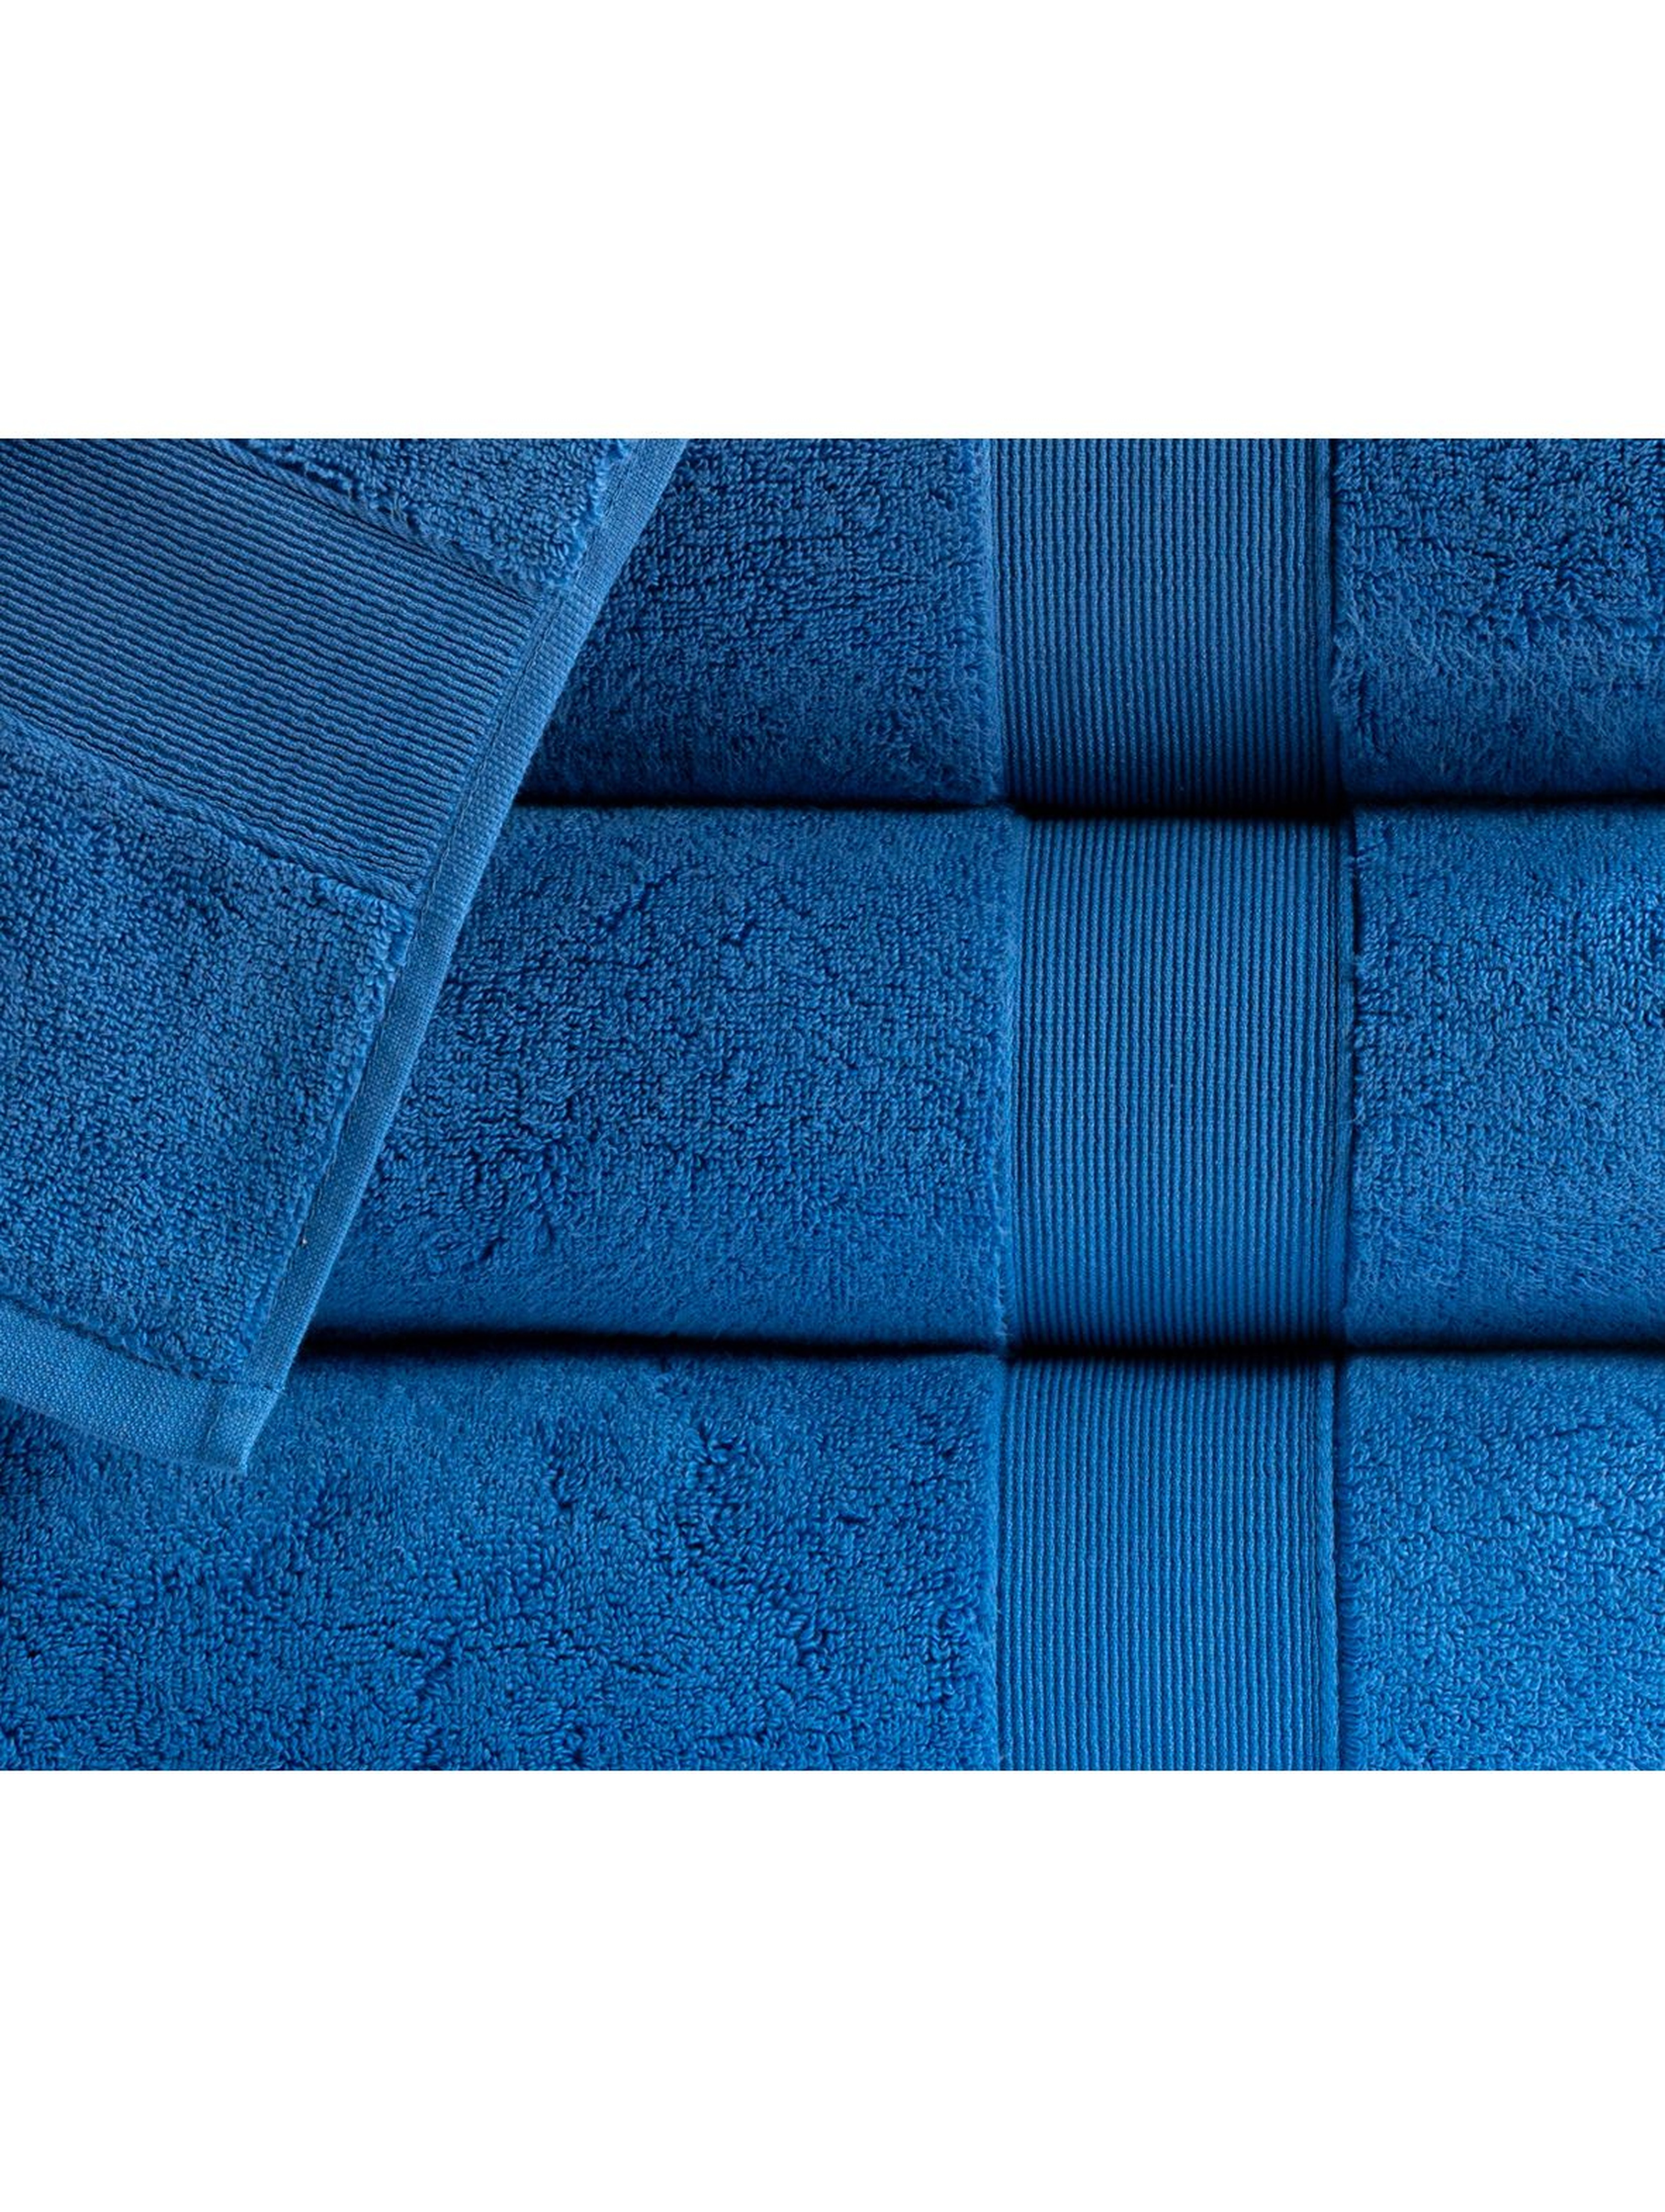 Bawełniany ręcznik ROCCO niebieski 50x90cm